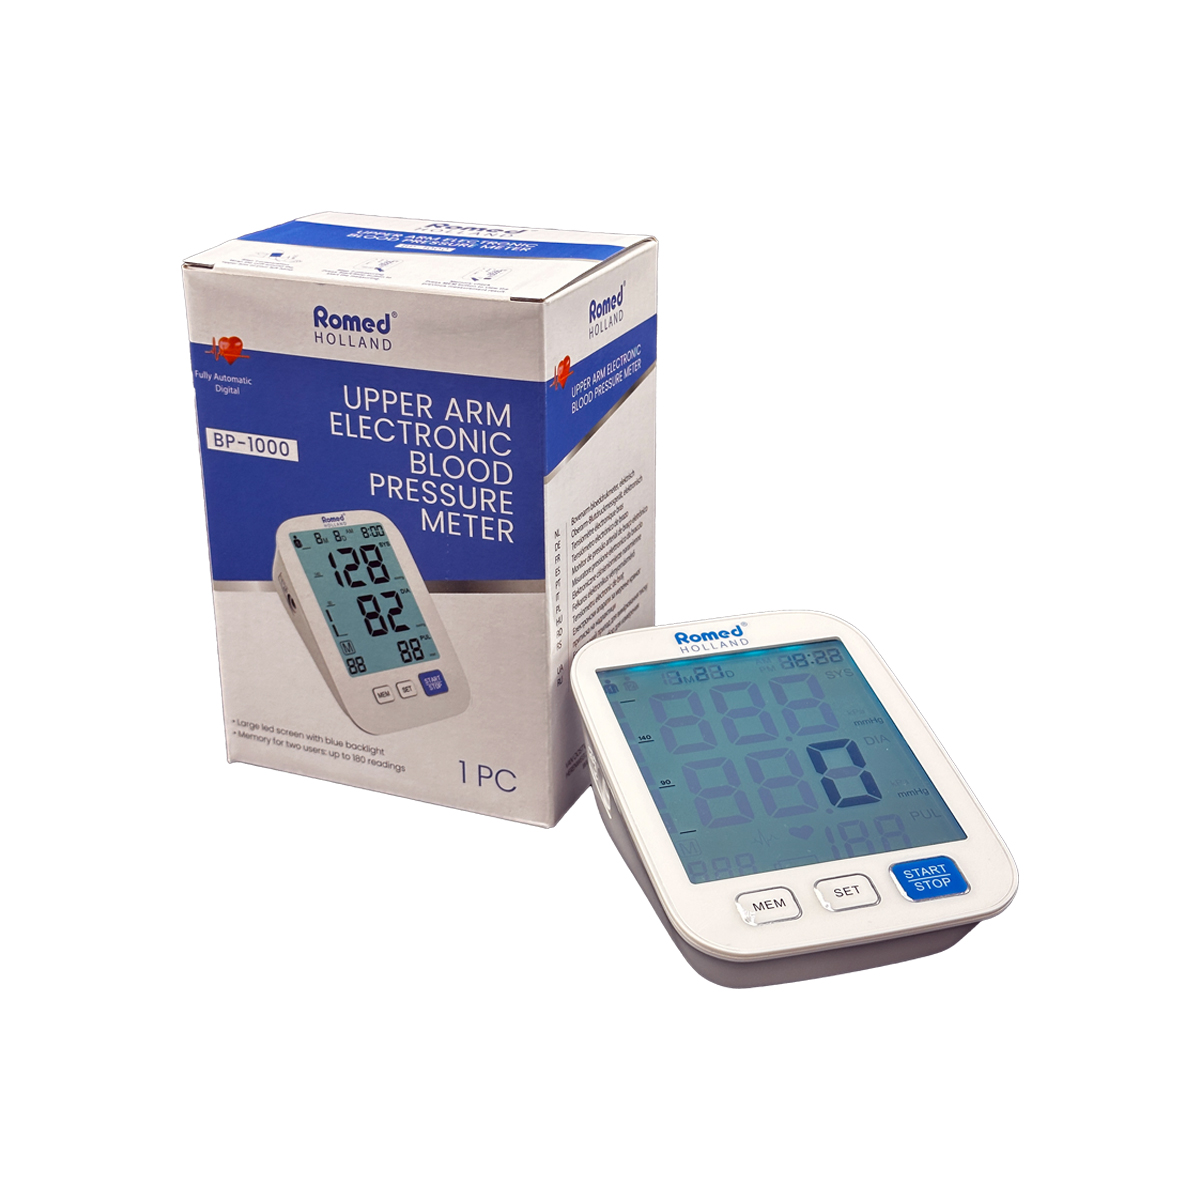 BP-1000 Medidores de pressão arterial Romed, totalmente automáticos, eletrónicos, por unidade em caixa interna, 10 un. por caixa de envio.